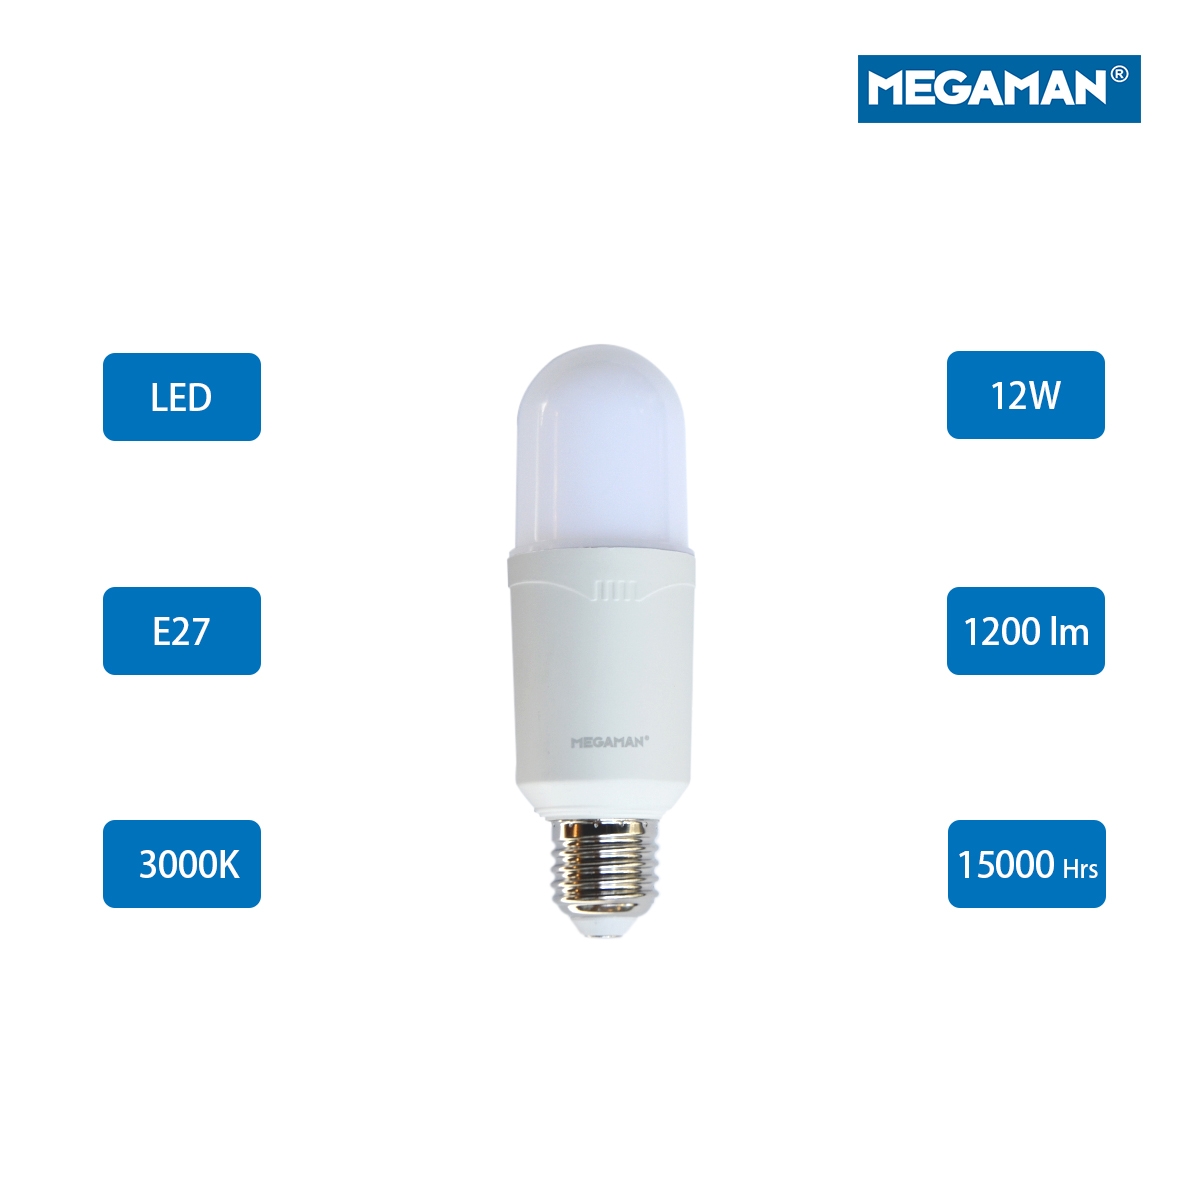 Megaman LED Classic Bulb E27  12W 3000K -Warm White